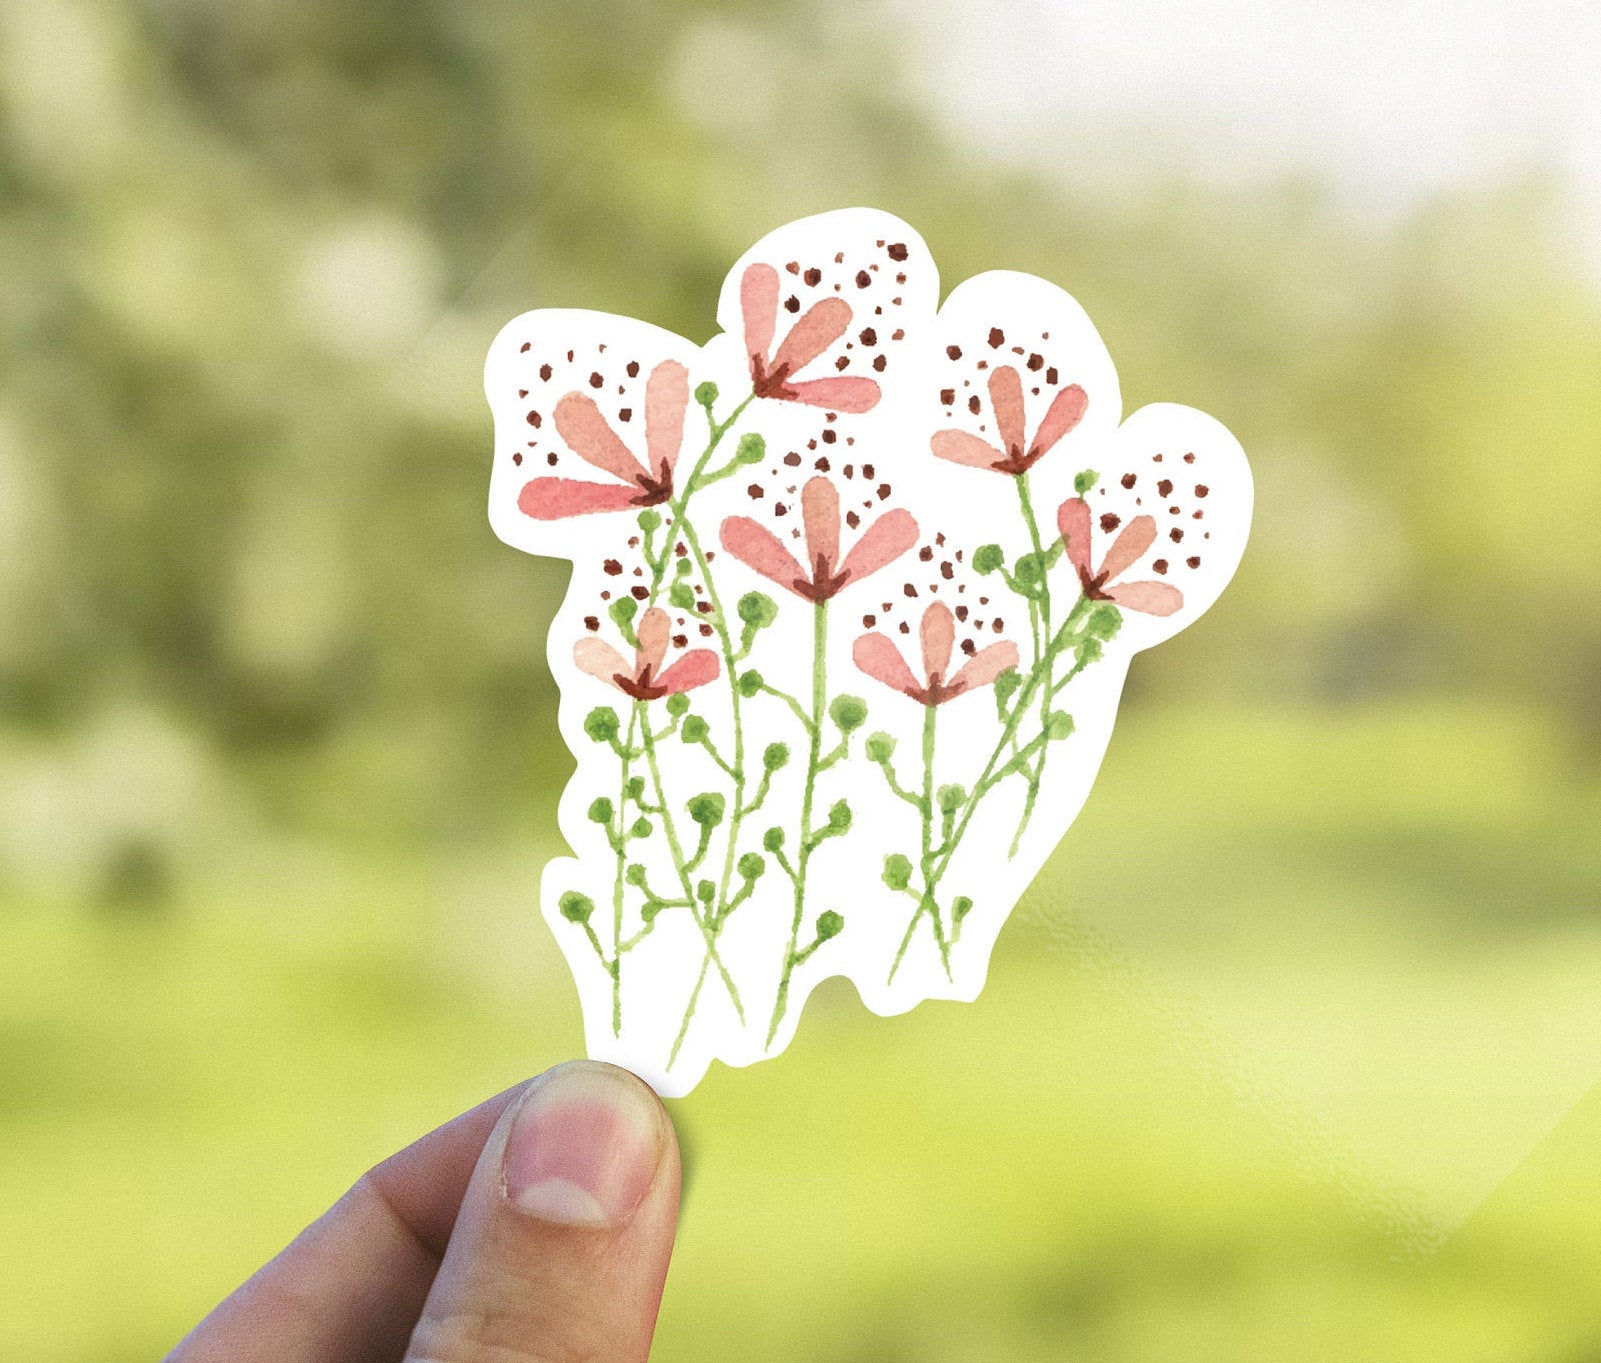 Wildflower - Wildflower - Sticker